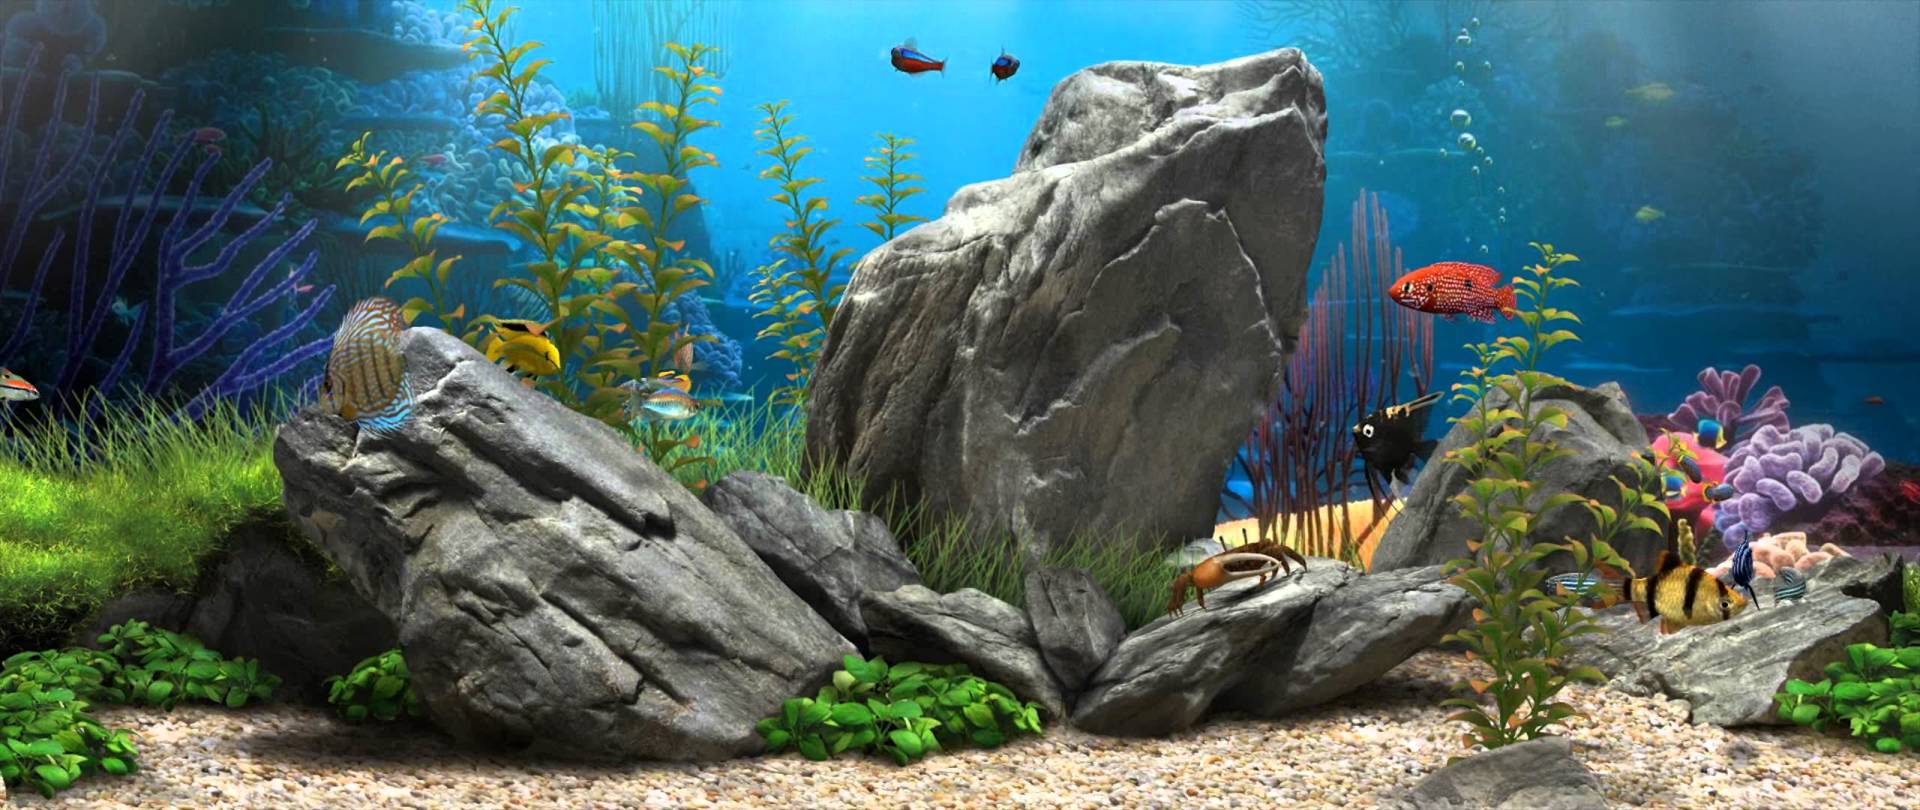 Dream Aquarium Live Wallpaper 1080p